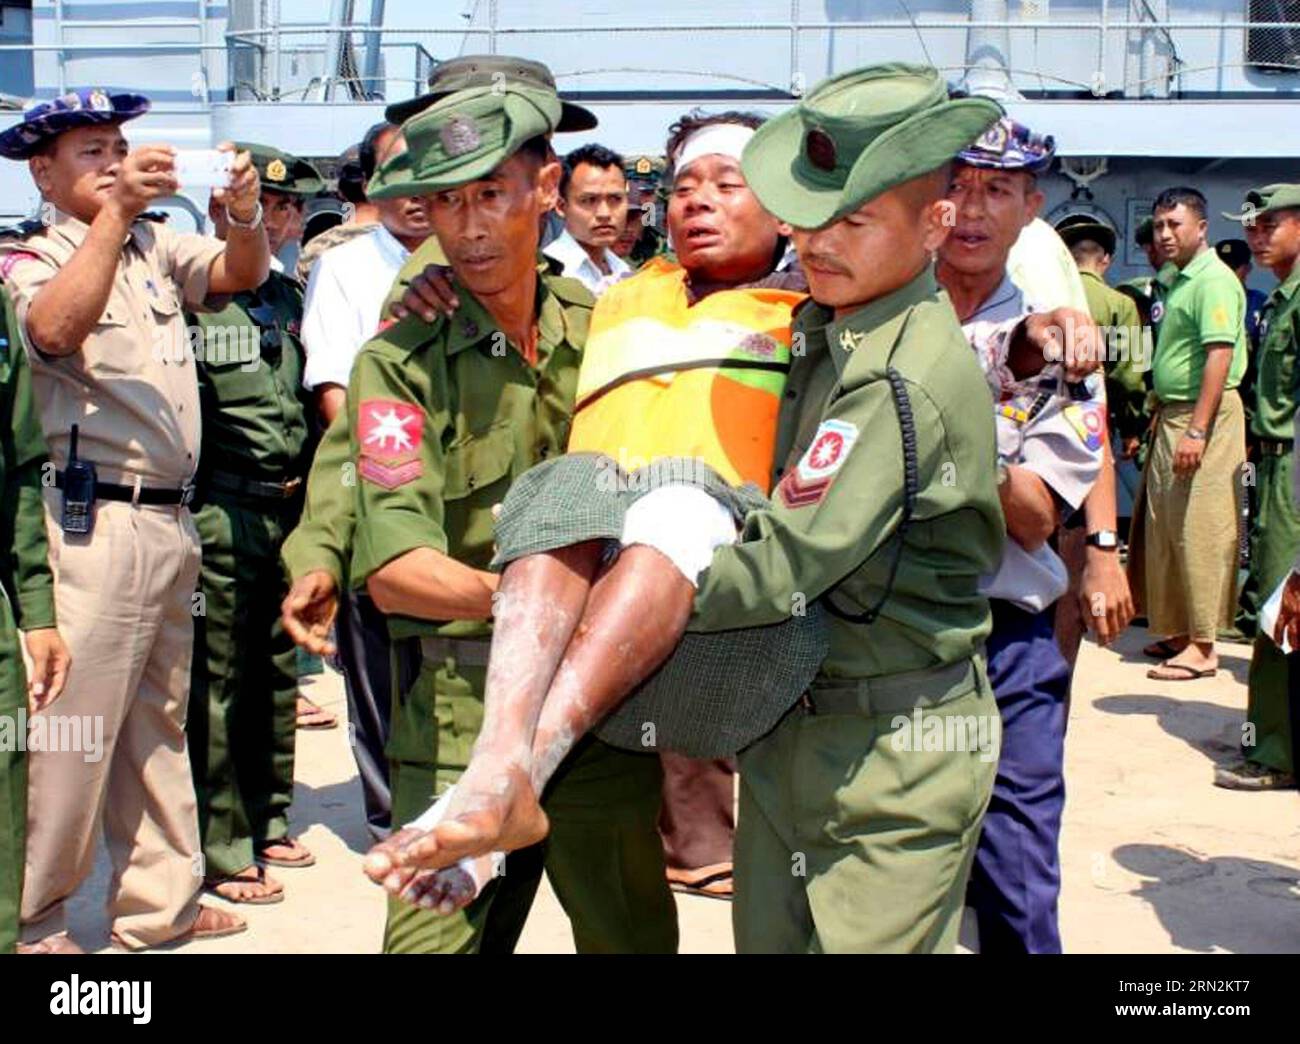 (150314) -- RAKHINE, 14 marzo 2015 -- i soccorritori aiutano un sopravvissuto all'incidente di affondamento della nave nello Stato di Rakhine occidentale del Myanmar, 14 marzo 2015. Almeno 21 persone sono morte e altre 47 sono scomparse, tra cui 30 donne, affondate al largo di Kyaukphyu, una grande città dello Stato di Rakhine occidentale del Myanmar, venerdì sera, fonti ufficiali confermate sabato. ) (Zjy) MYANMAR-RAKHINE-VESSEL SINKAGE-RESCUE MyanmarxNewsxAgency PUBLICATIONxNOTxINxCHN Rakhine 14 marzo 2015 salvataggio aiuto un sopravvissuto dell'incidente navale nello Stato occidentale di Rakhine del Myanmar 14 marzo 2015 almeno 21 celebrità sono morte a. Foto Stock